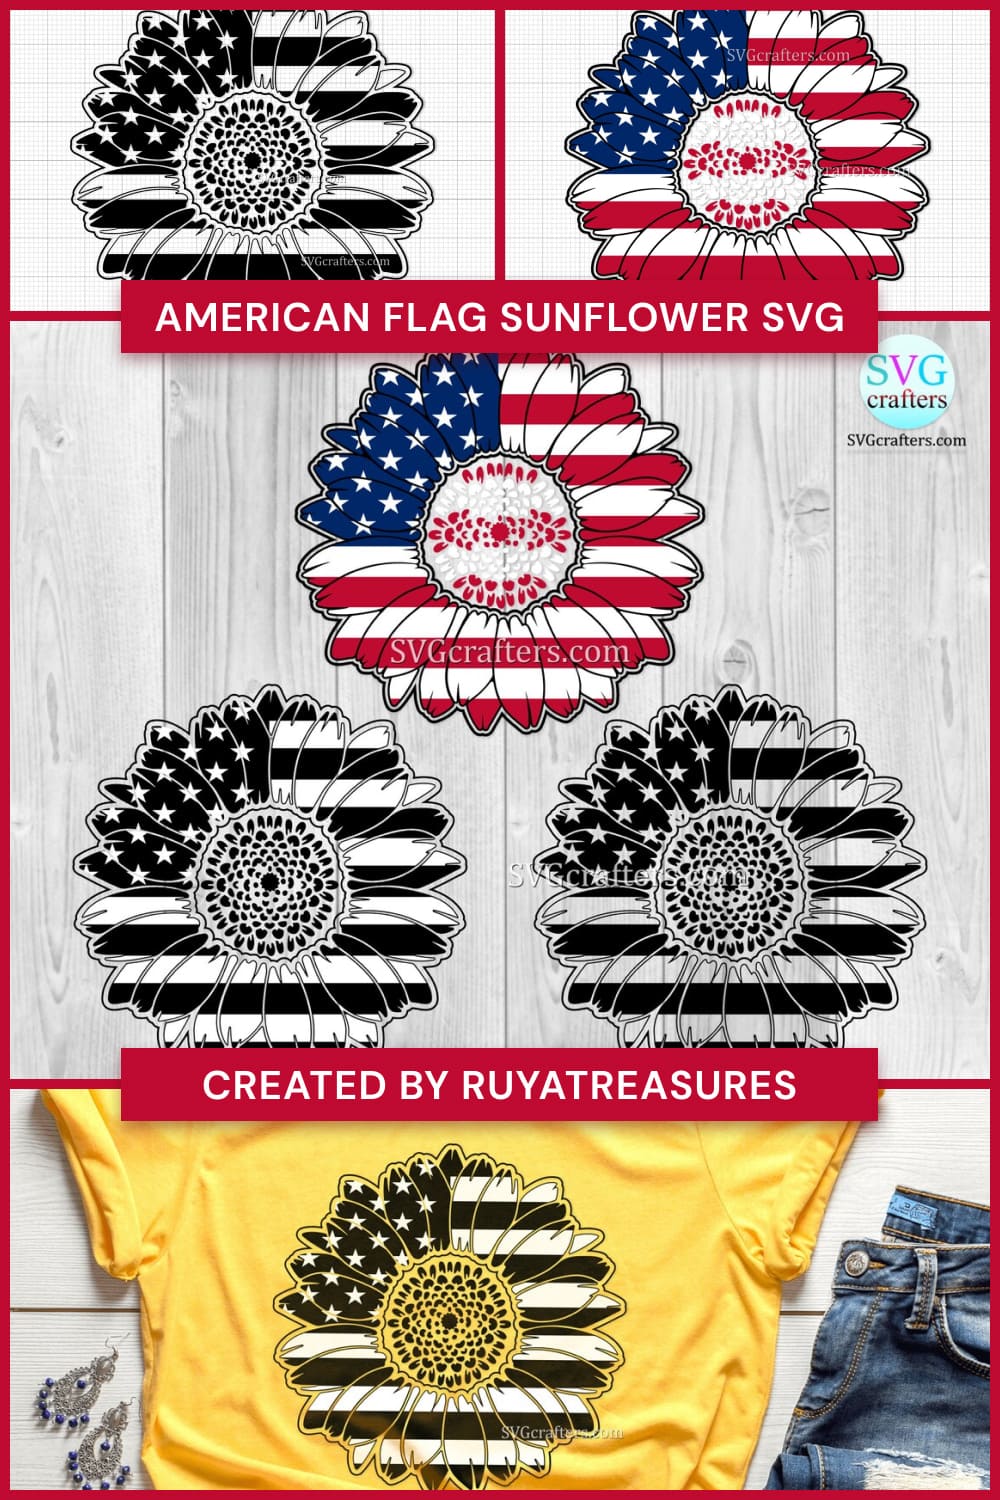 american flag sunflower svg pinterest image.